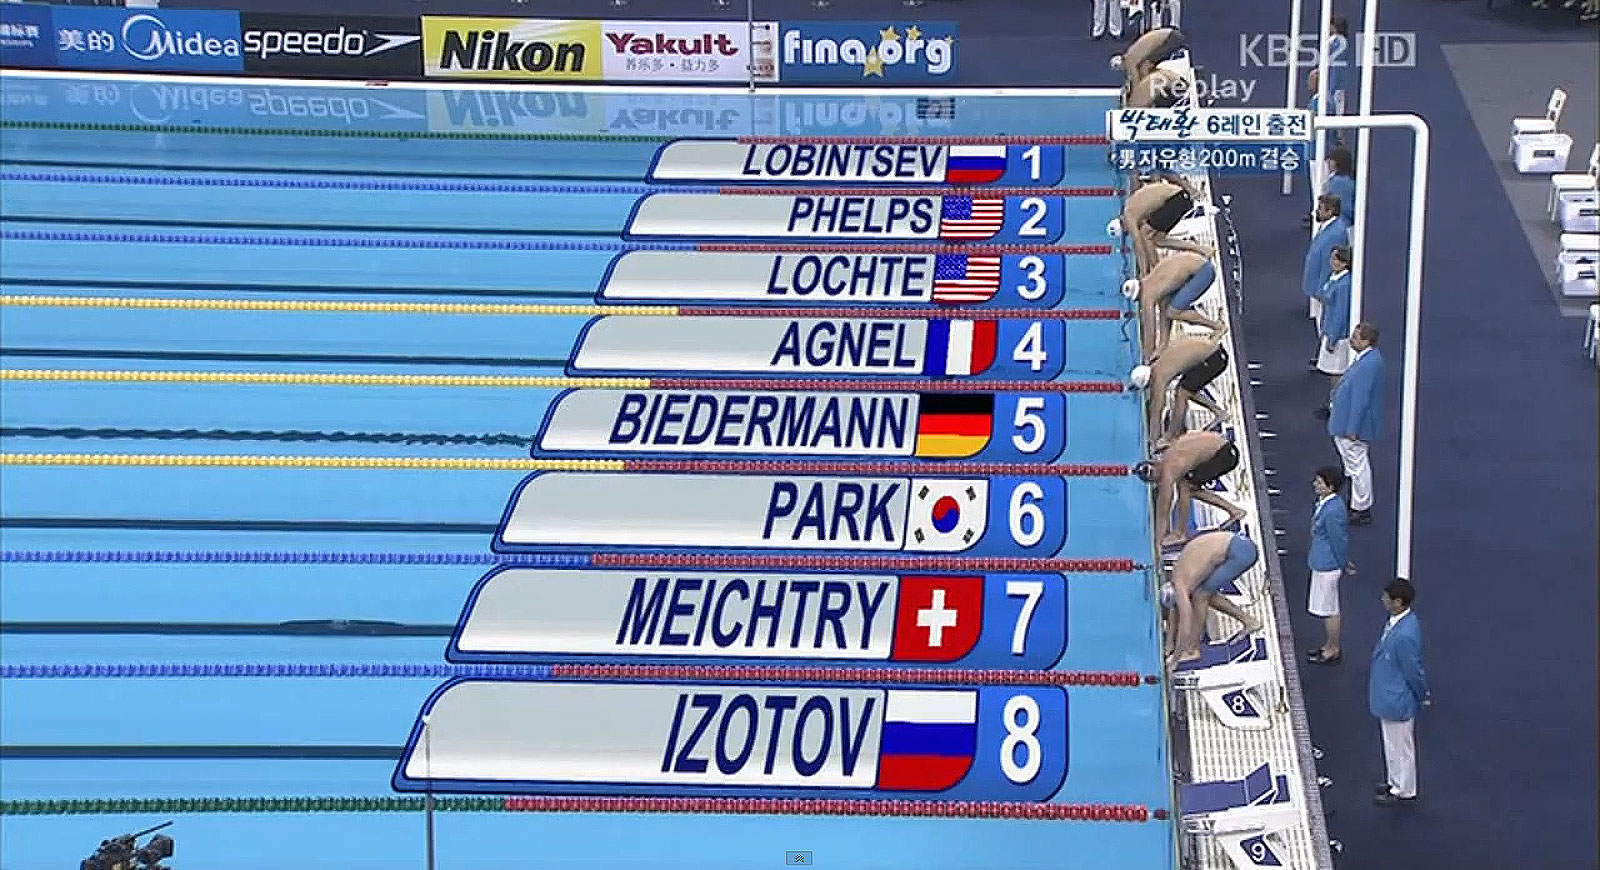 Phelps, Lochte, Agnel, Bidermann y Park. Cinco colosos como pocas veces se pueden ver competir.